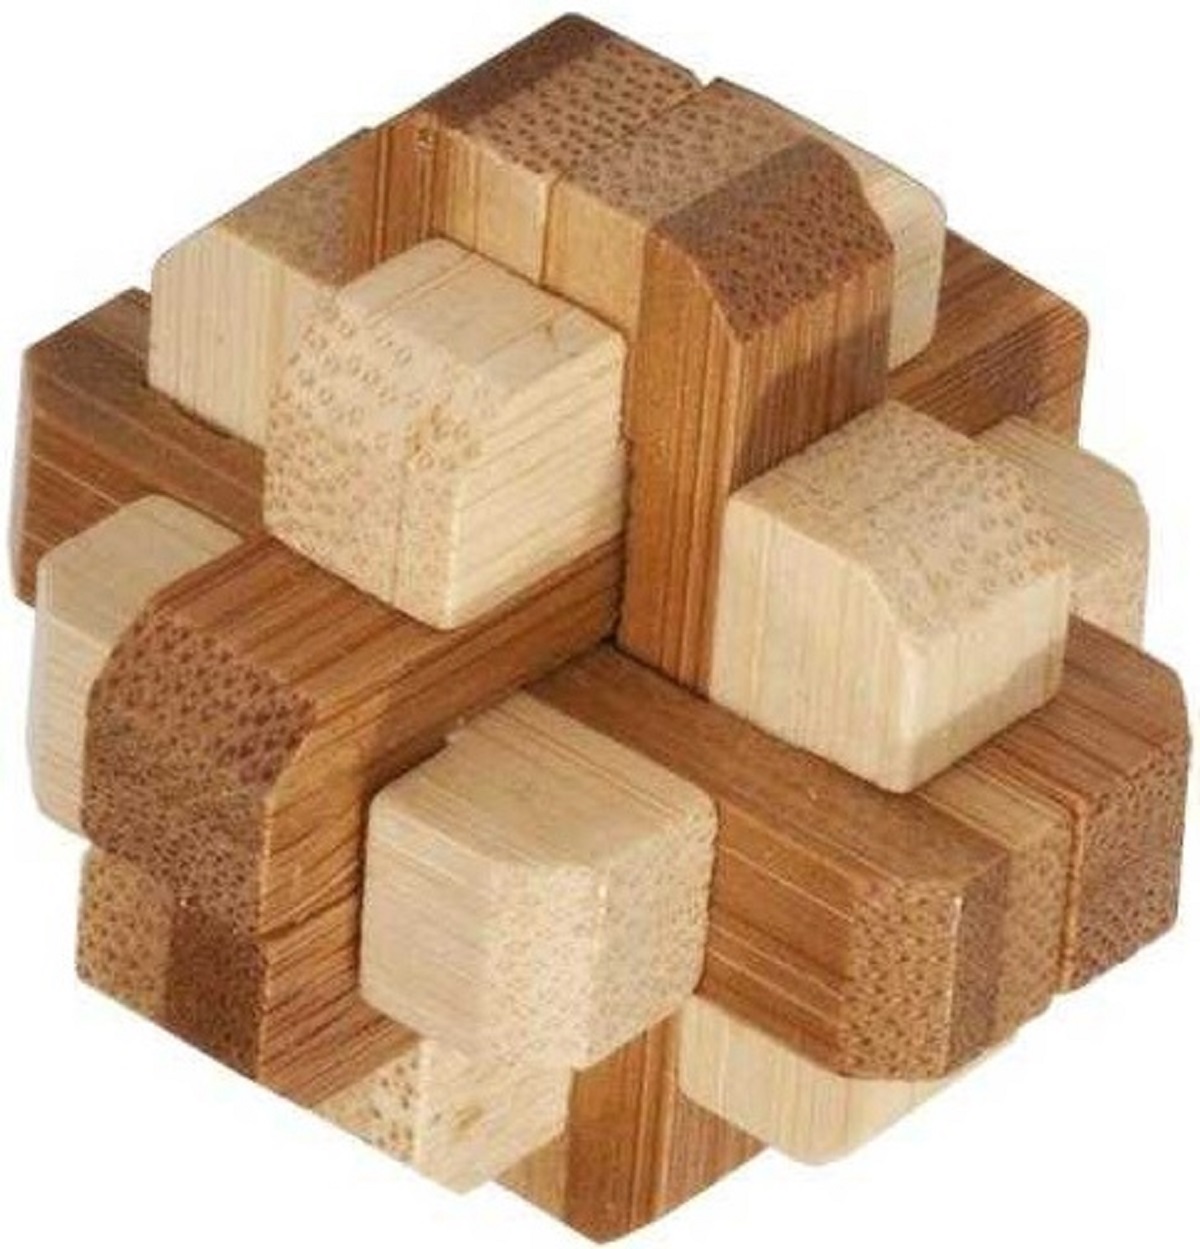 IQ-Test. Joc logic din lemn puzzle 3D in cutie metalica: 4